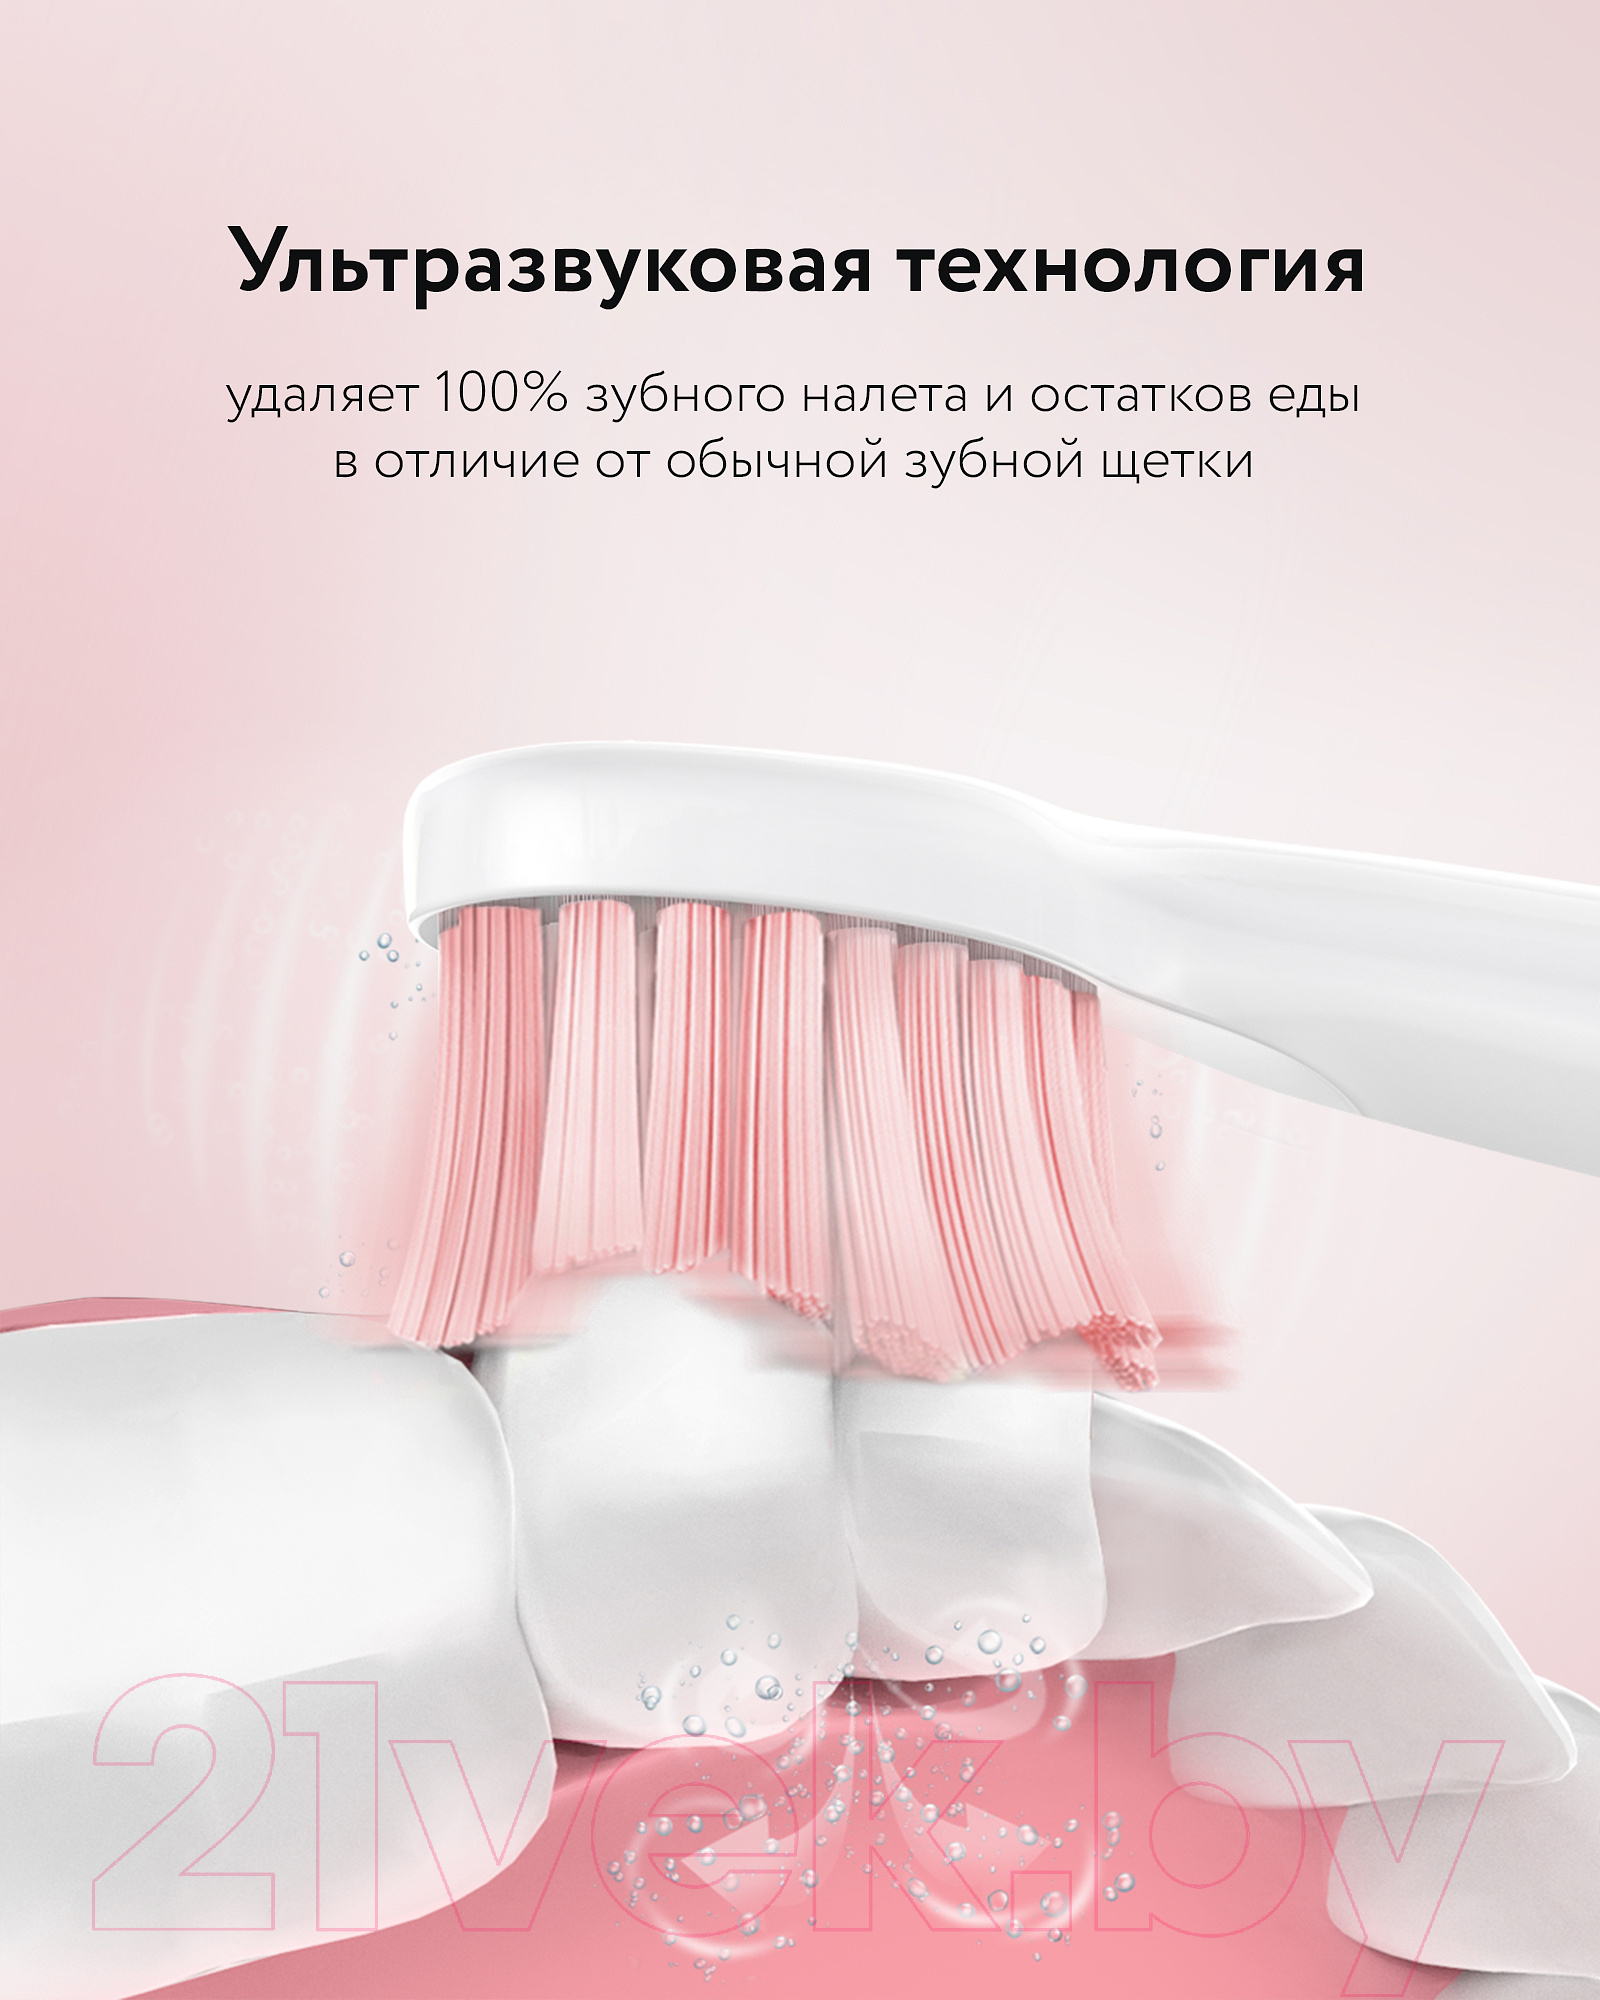 Электрическая зубная щетка Fairywill E11